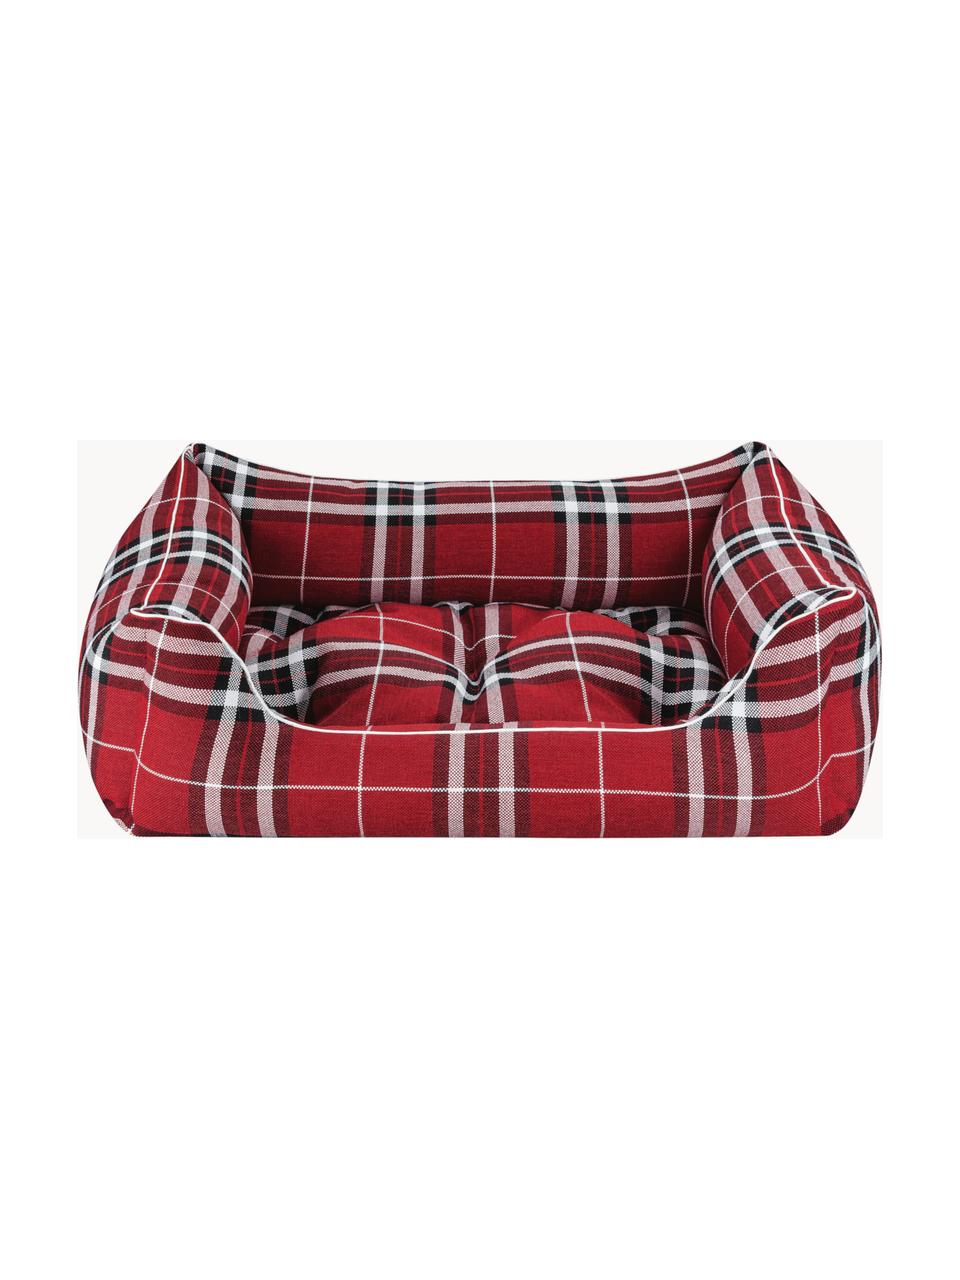 Pelíšek pro psa Highlands, různé velikosti, Červená, černá, bílá, Š 70 cm, H 50 cm